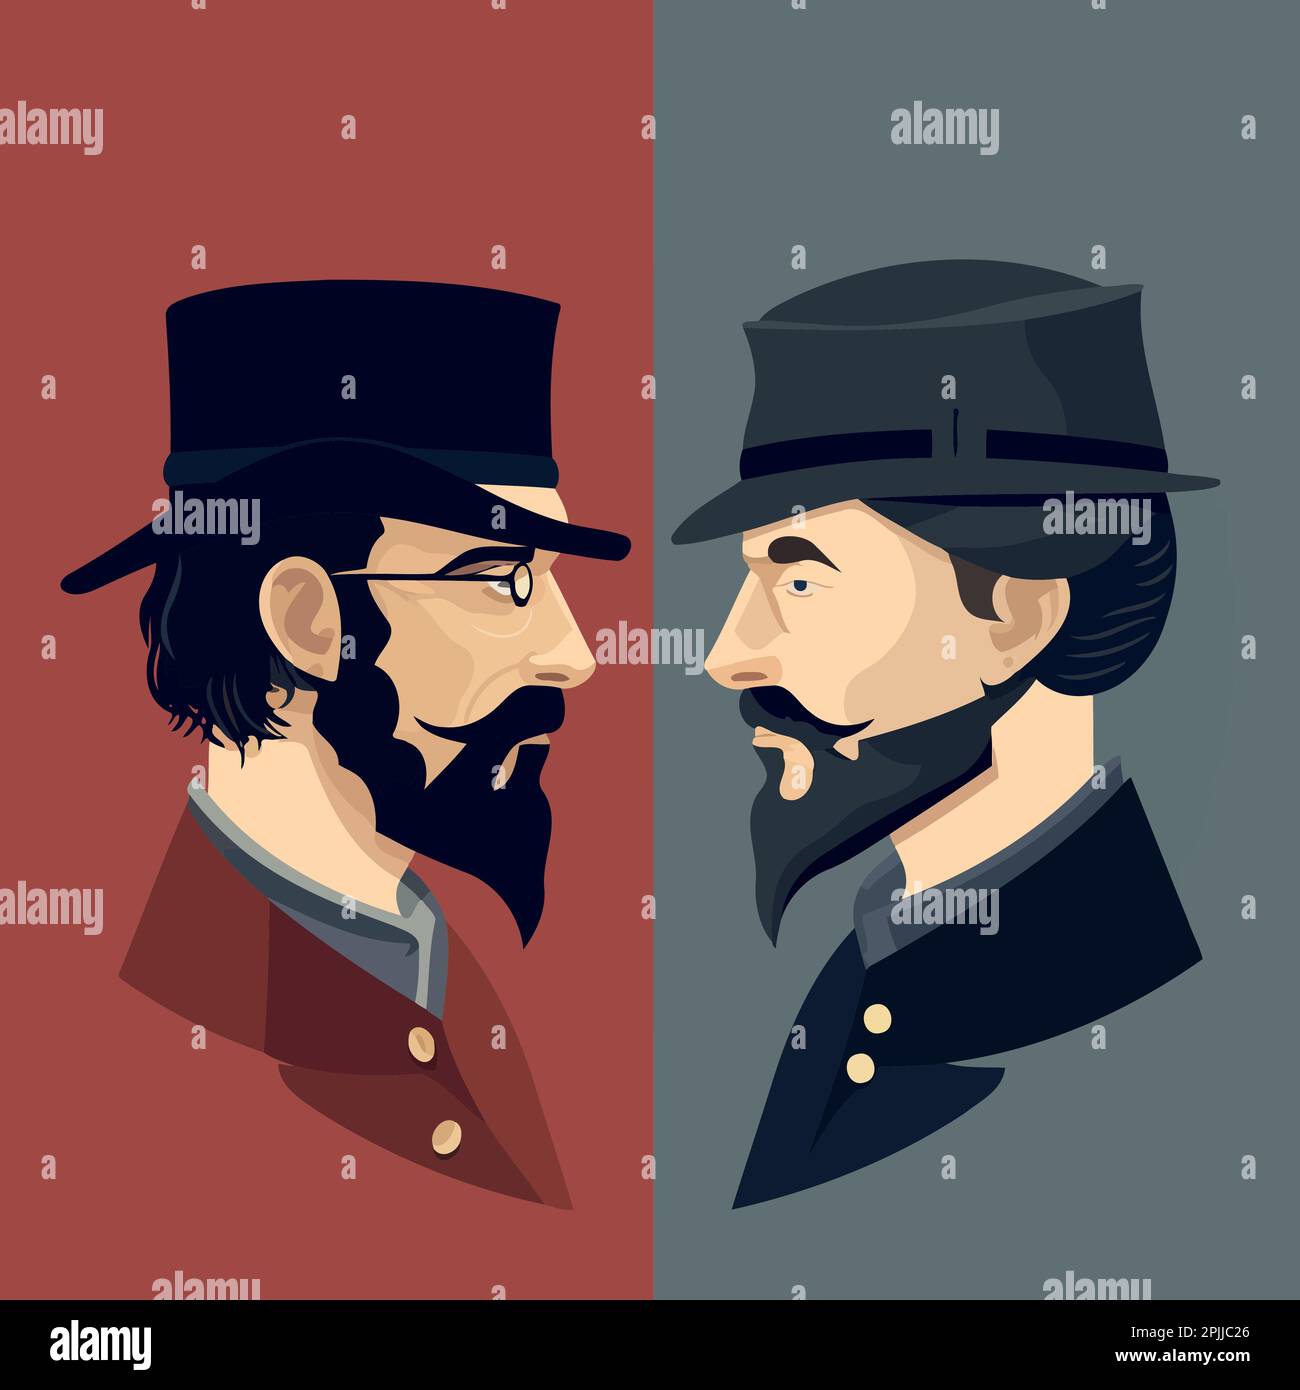 La guerre civile américaine est représentée par deux hommes qui se confrontent l'une à l'autre illustration vectorielle minimaliste Union contre Confédération Illustration de Vecteur